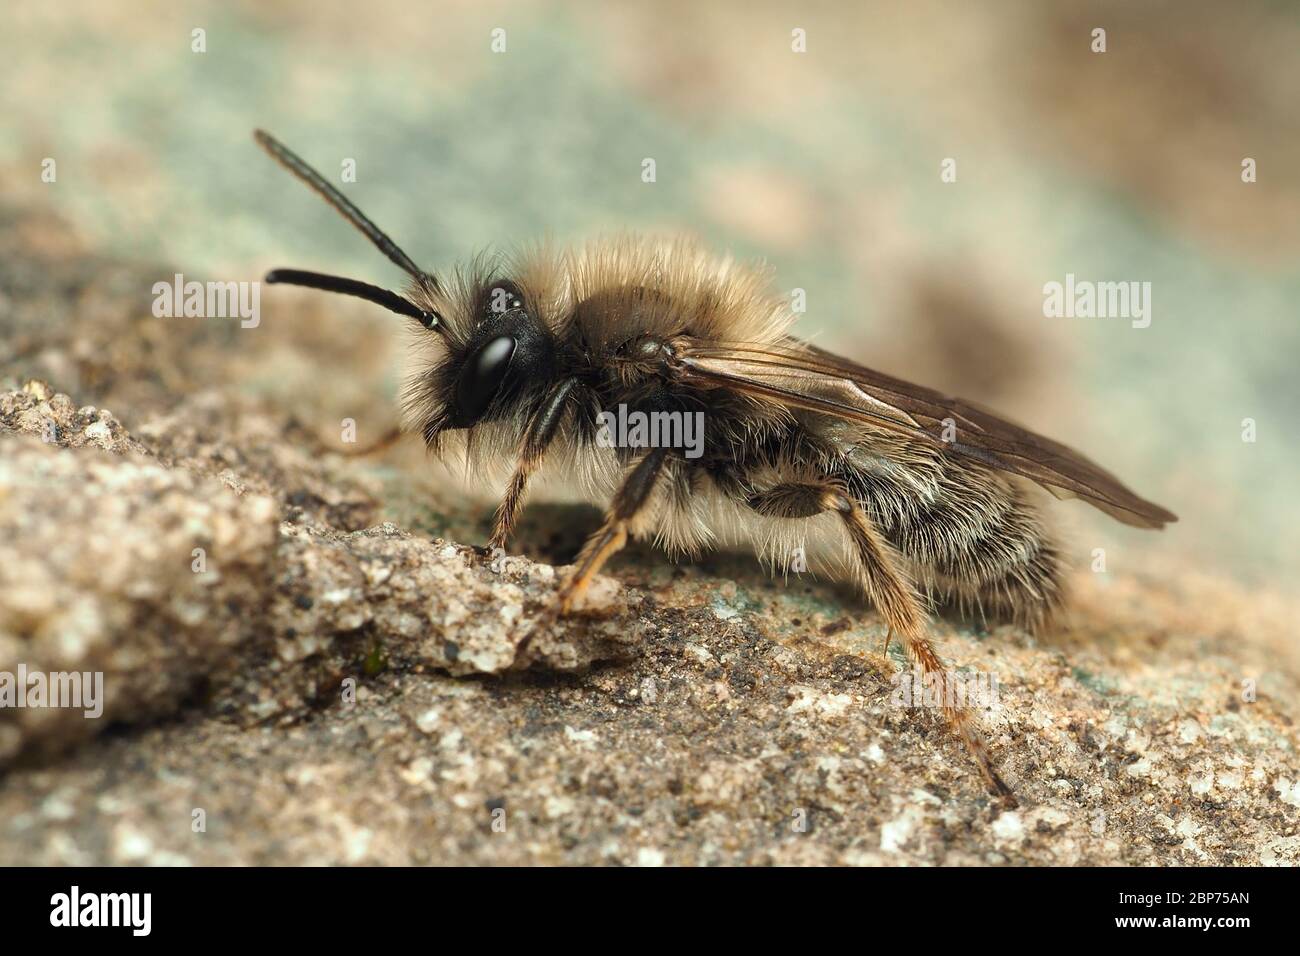 Männchen Andrena clerkella Bergbau Biene in Ruhe auf dem Boden. Tipperary, Irland Stockfoto